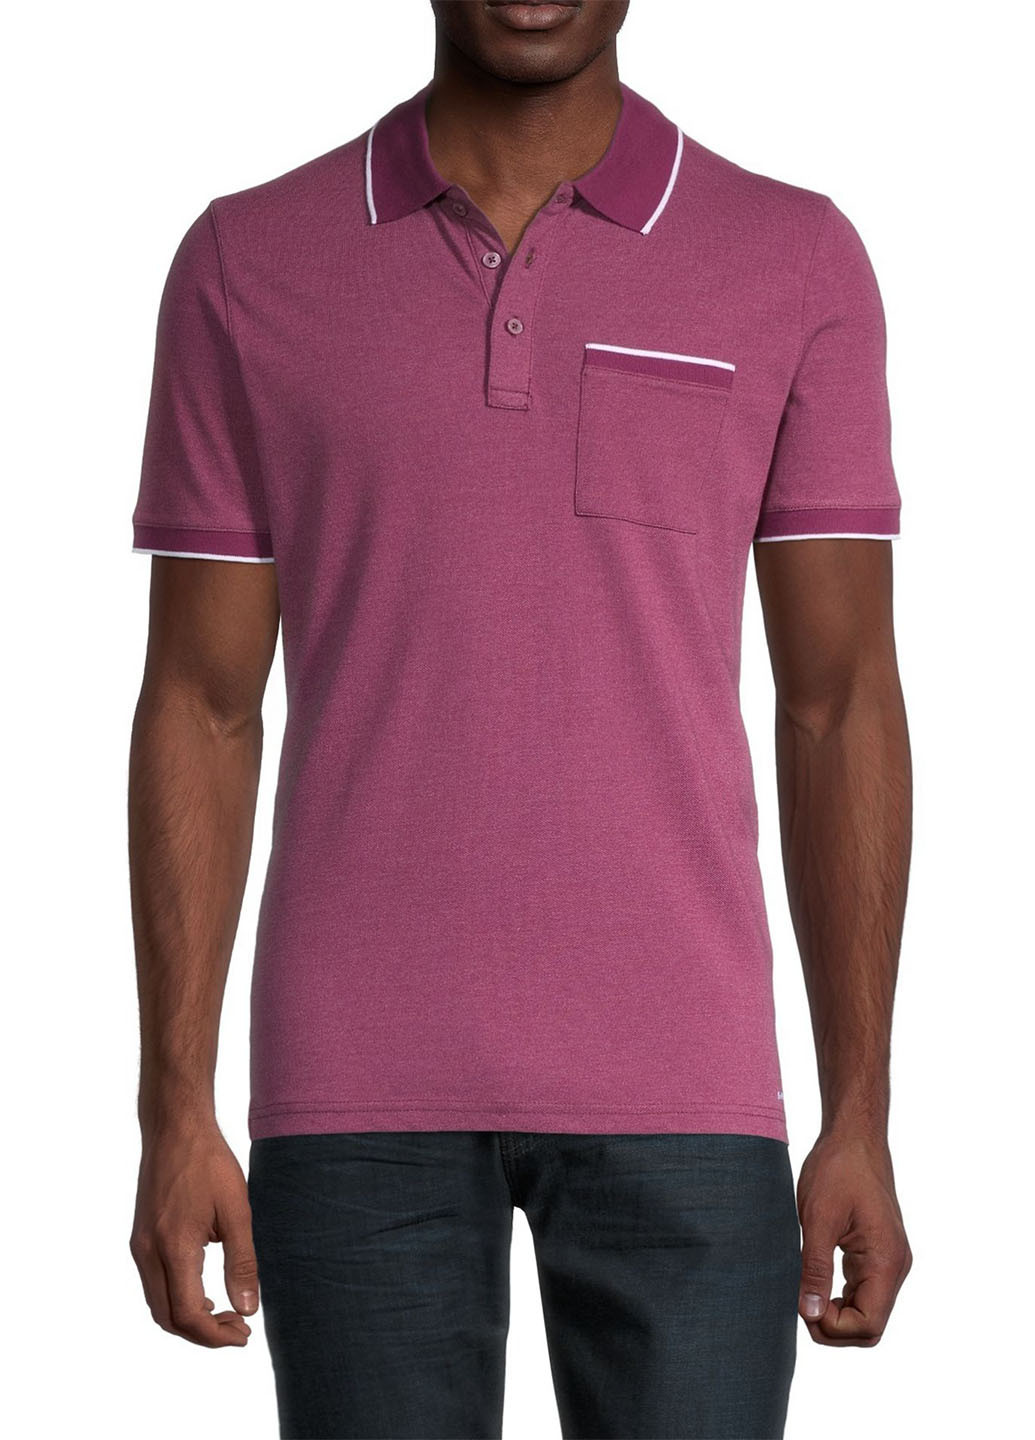 Фиолетовая футболка-поло для мужчин Michael Kors однотонная